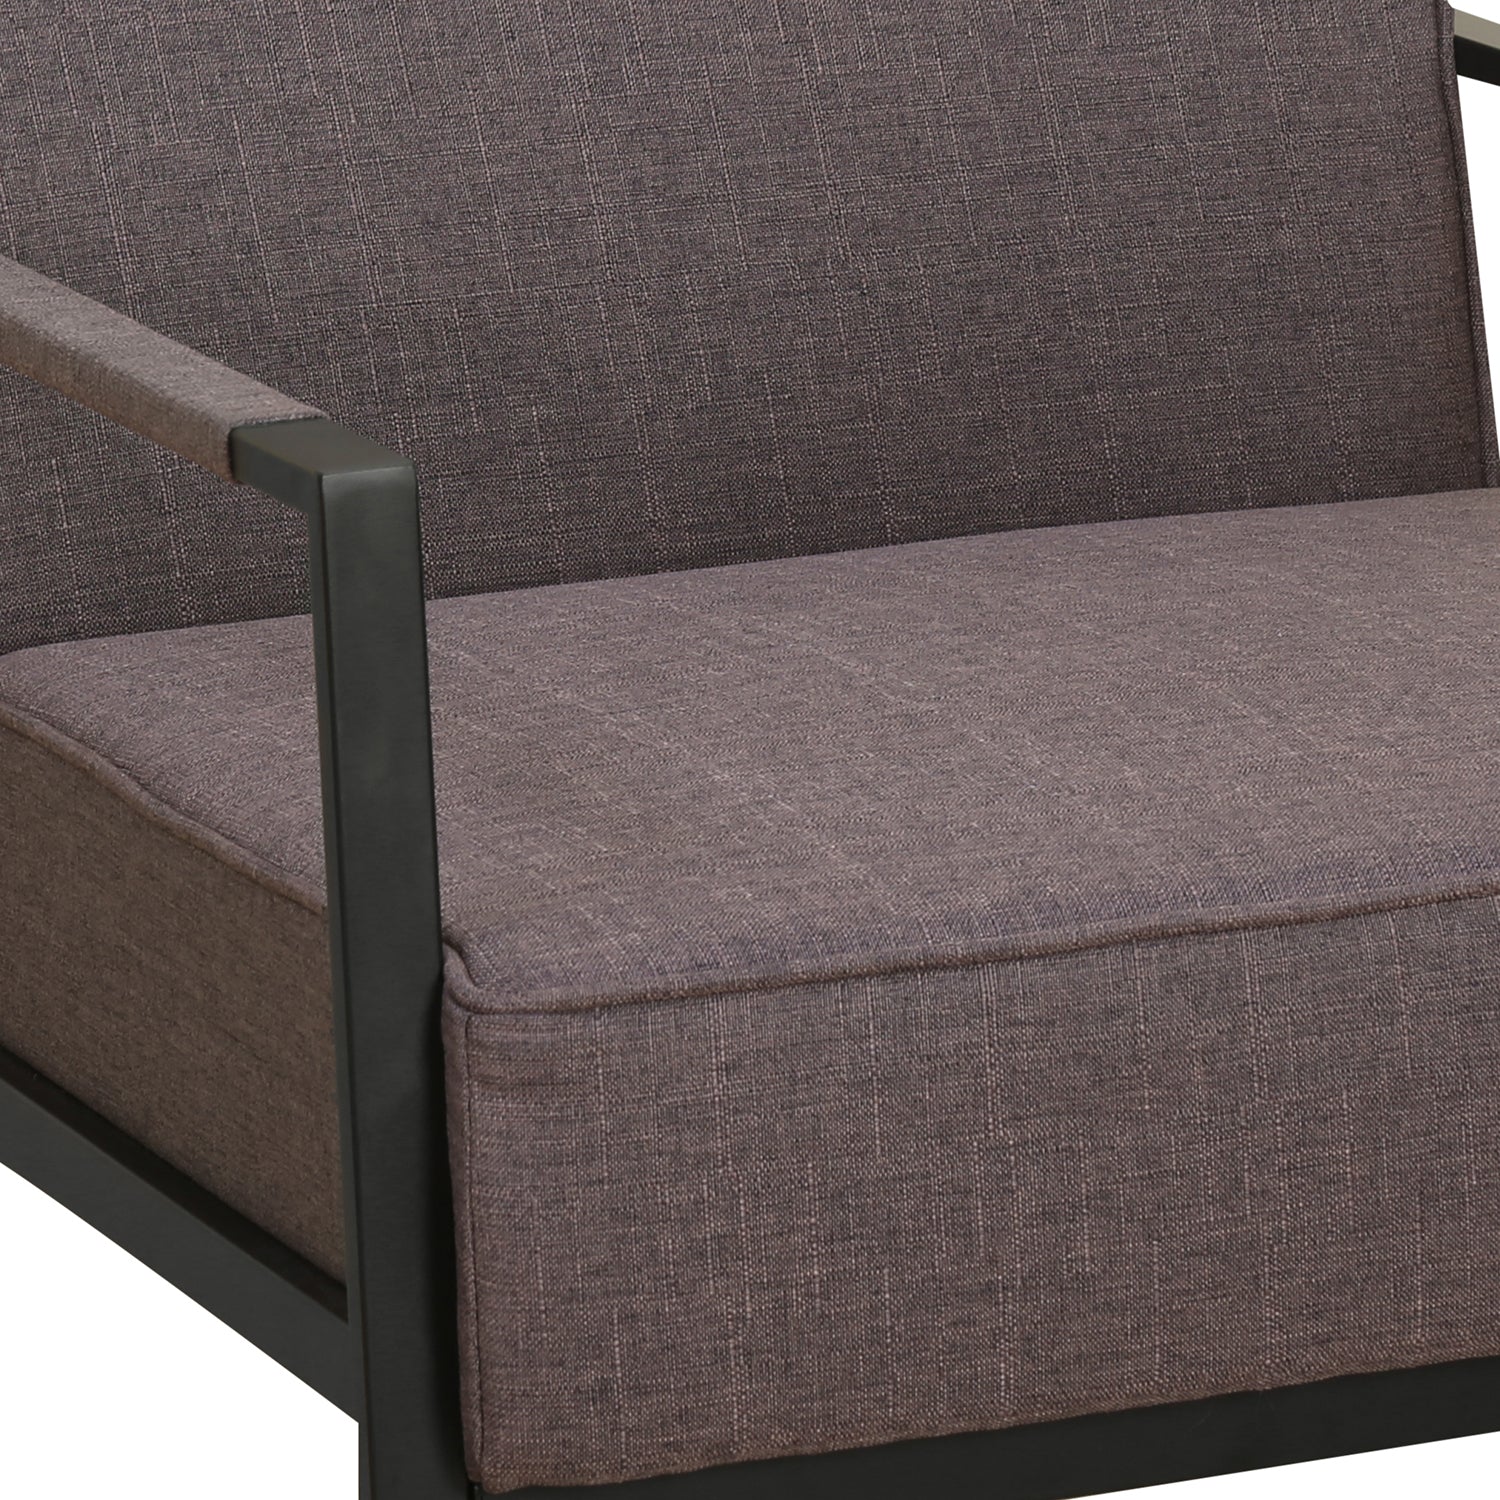 Remus 3 Seater Sofa (Dark Brown)